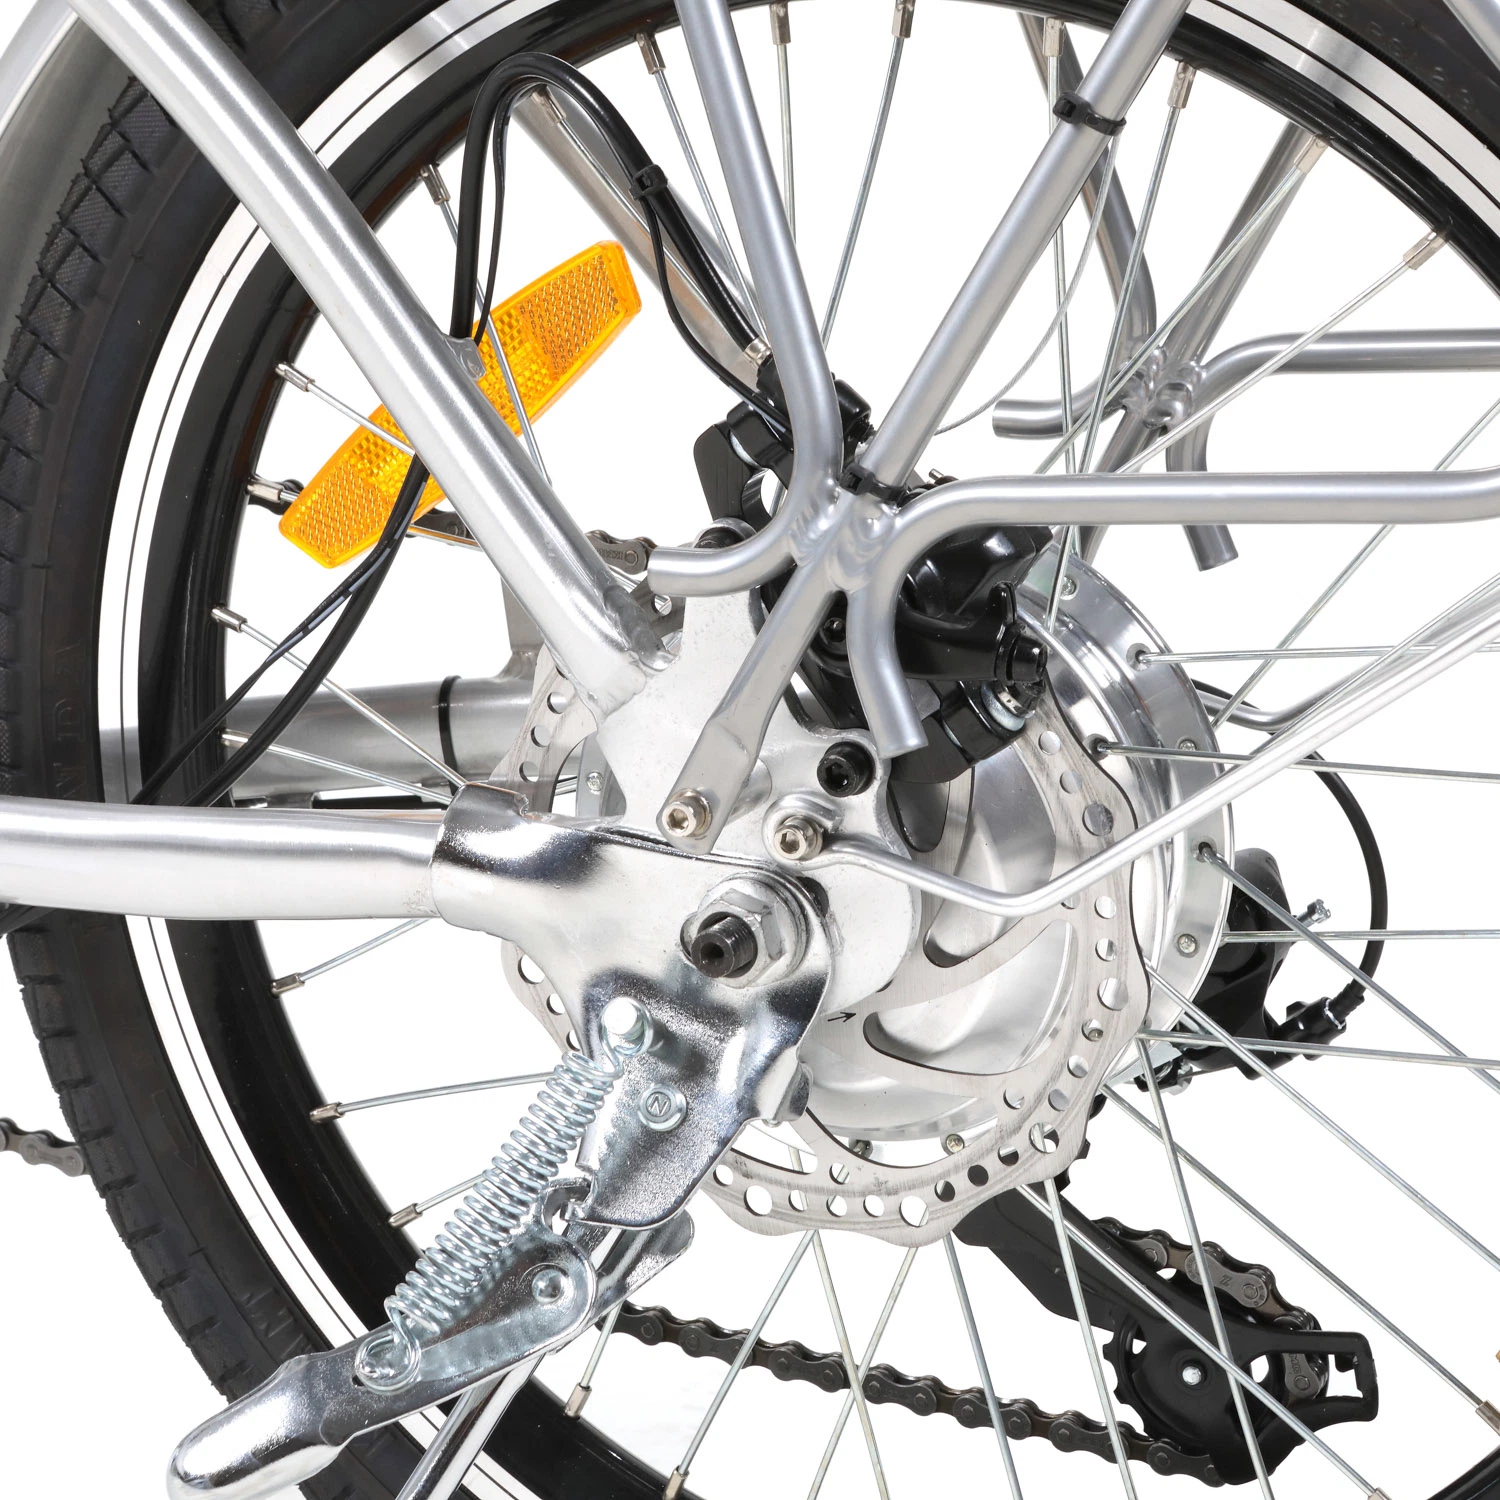 20 bicicleta eléctrica plegable 250W pulgadas eBike CE Certificación barato Bicicleta eléctrica plegable de bolsillo caliente